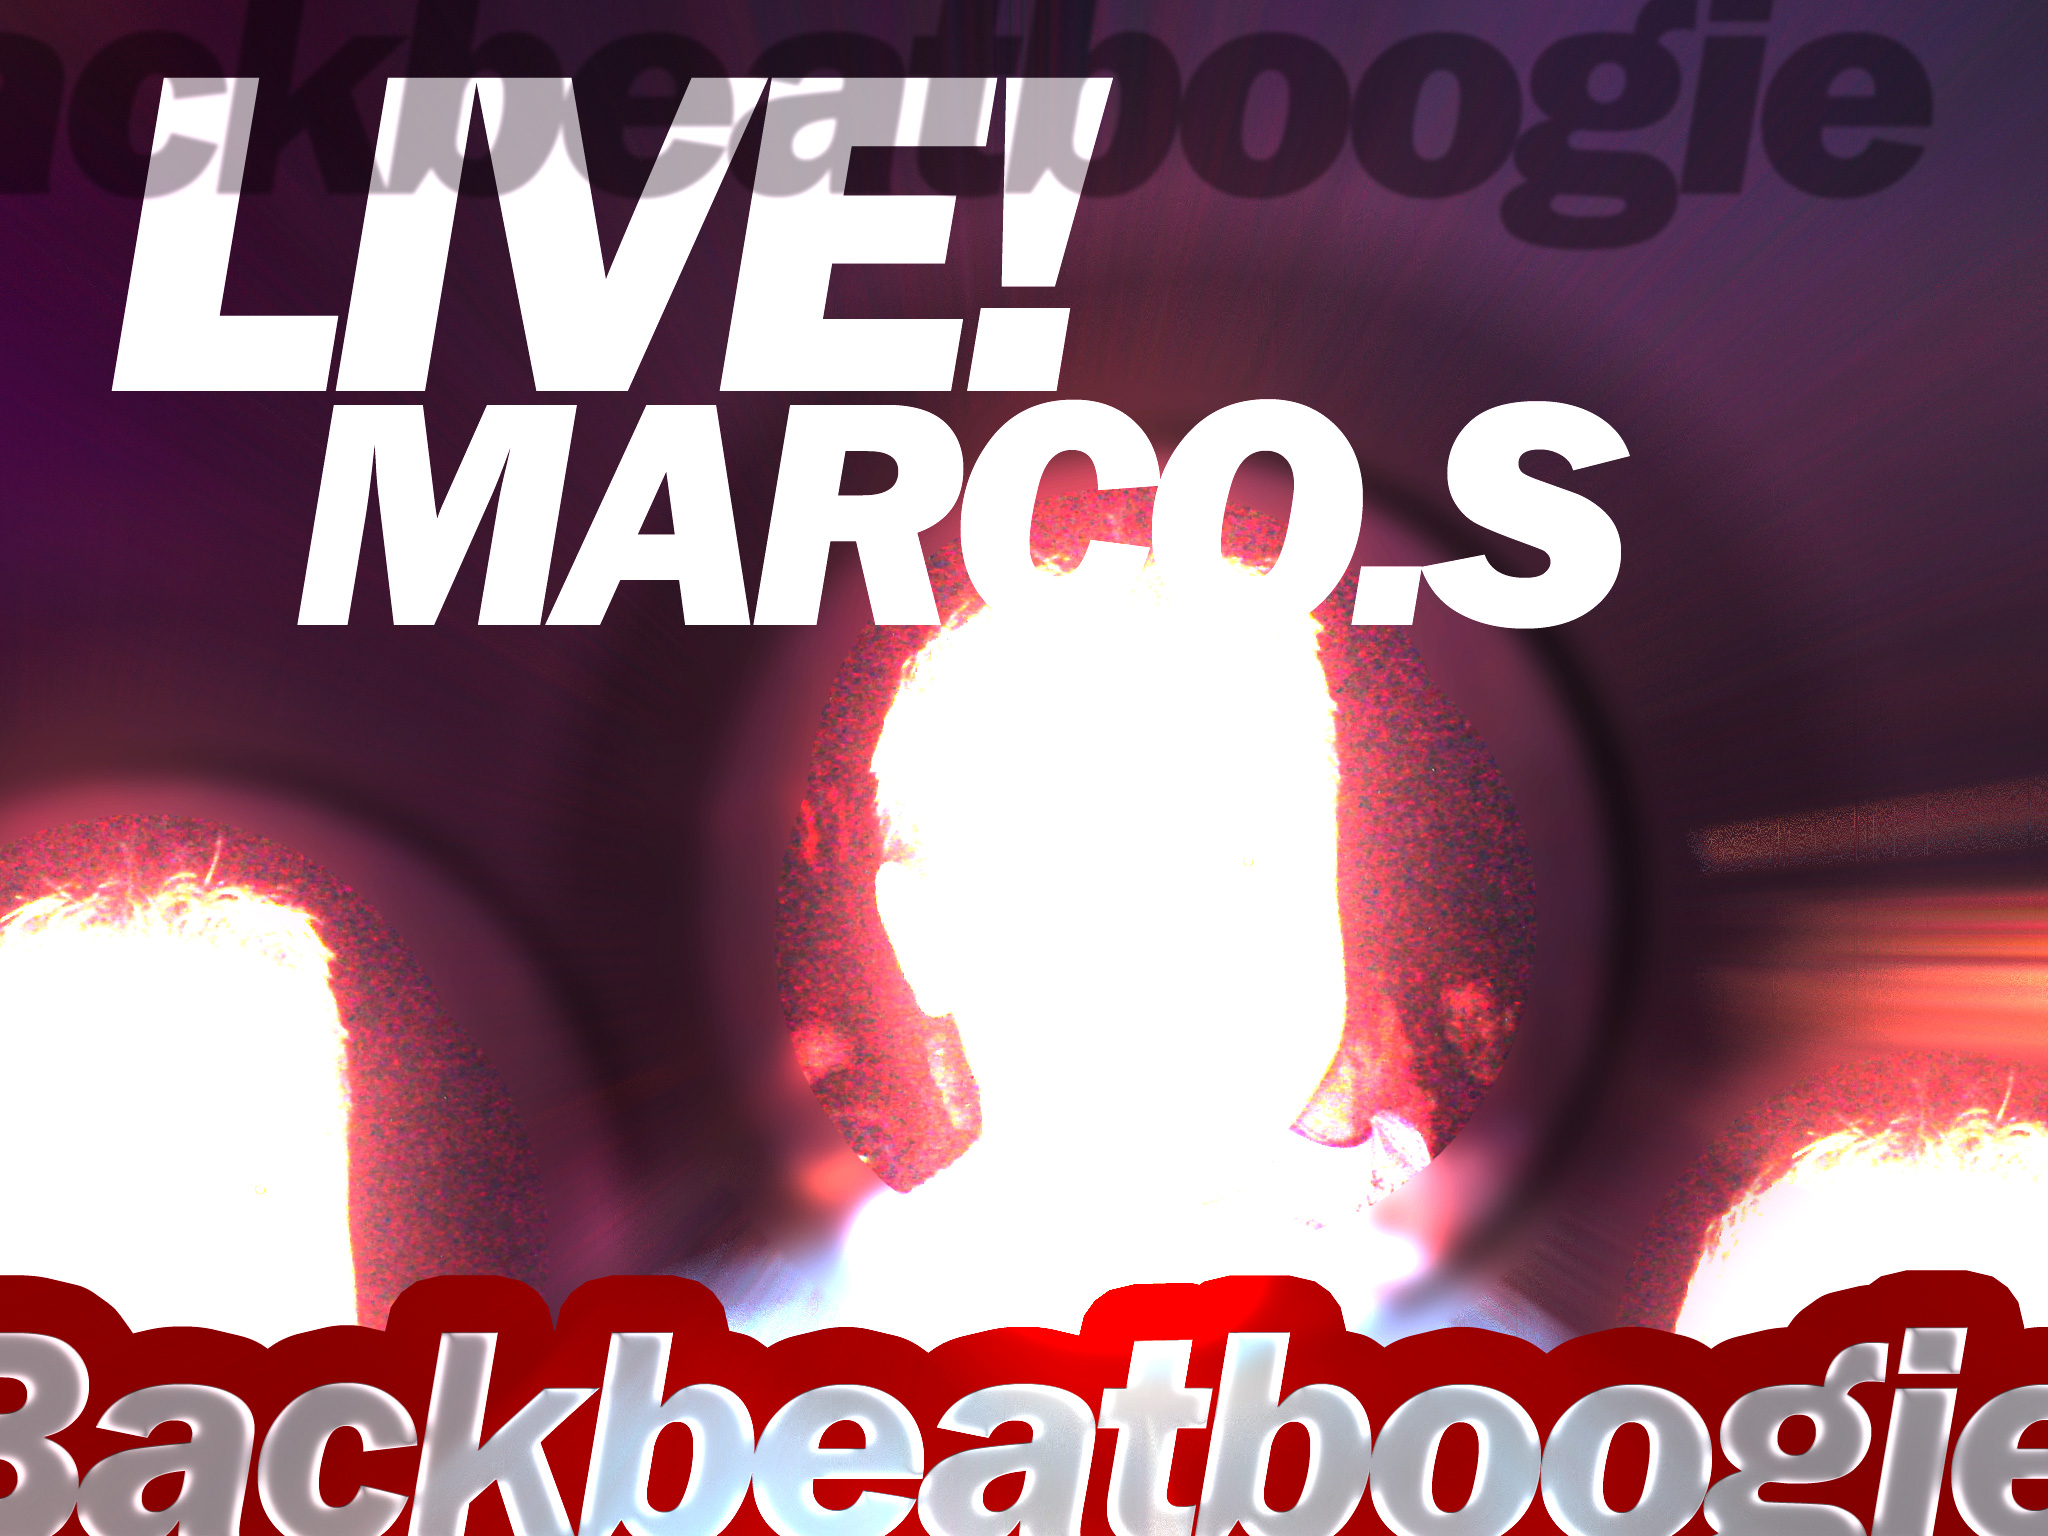 CD-Cover_Backbeatboogie-Marco-Live.jpg